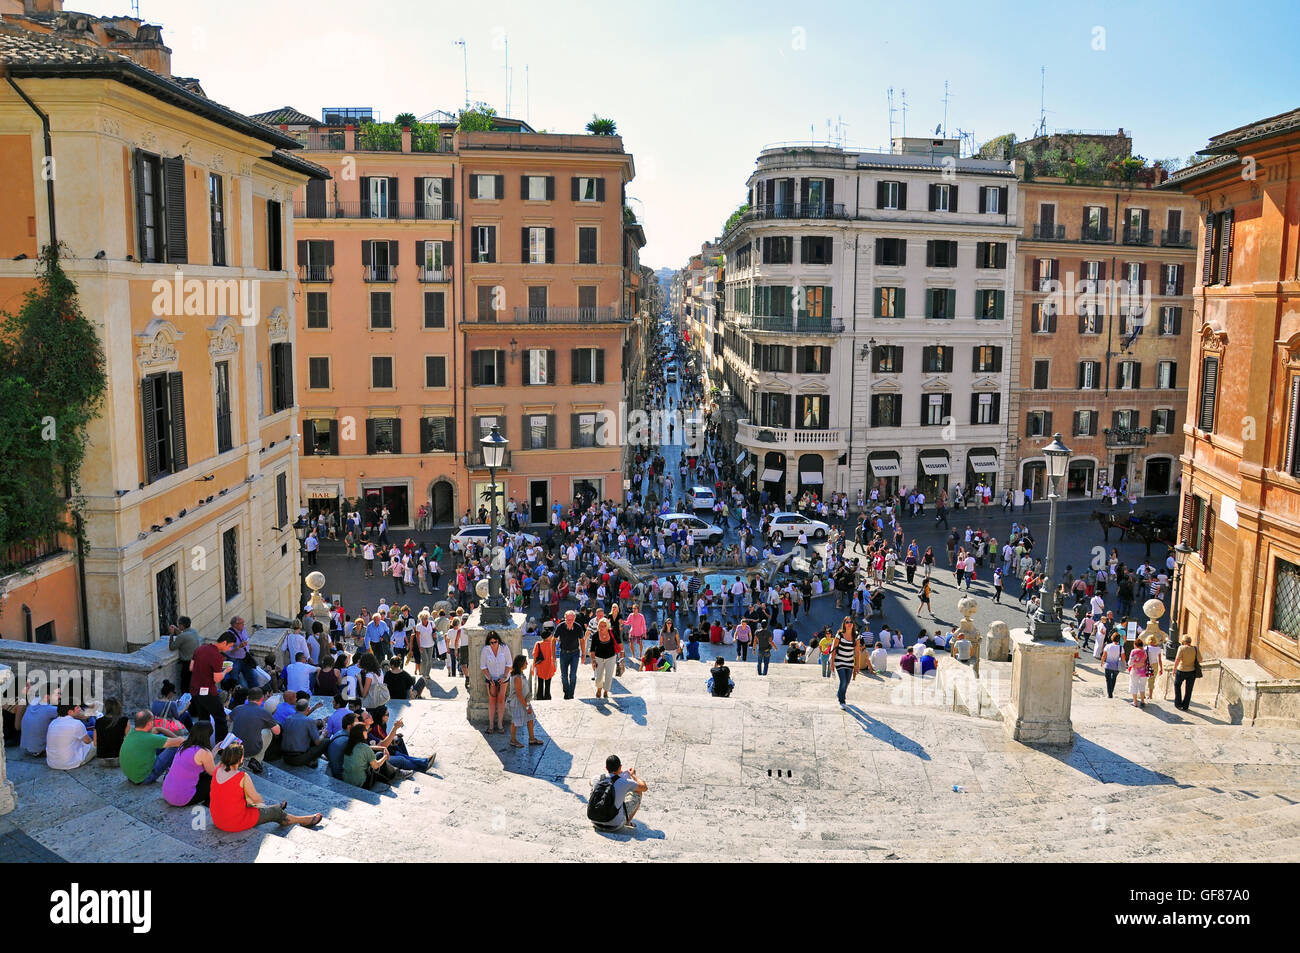 Roma, Italia - 5 ottobre: Gente seduta sulla scalinata di Piazza di Spagna a Roma il 5 ottobre 2011. Foto Stock